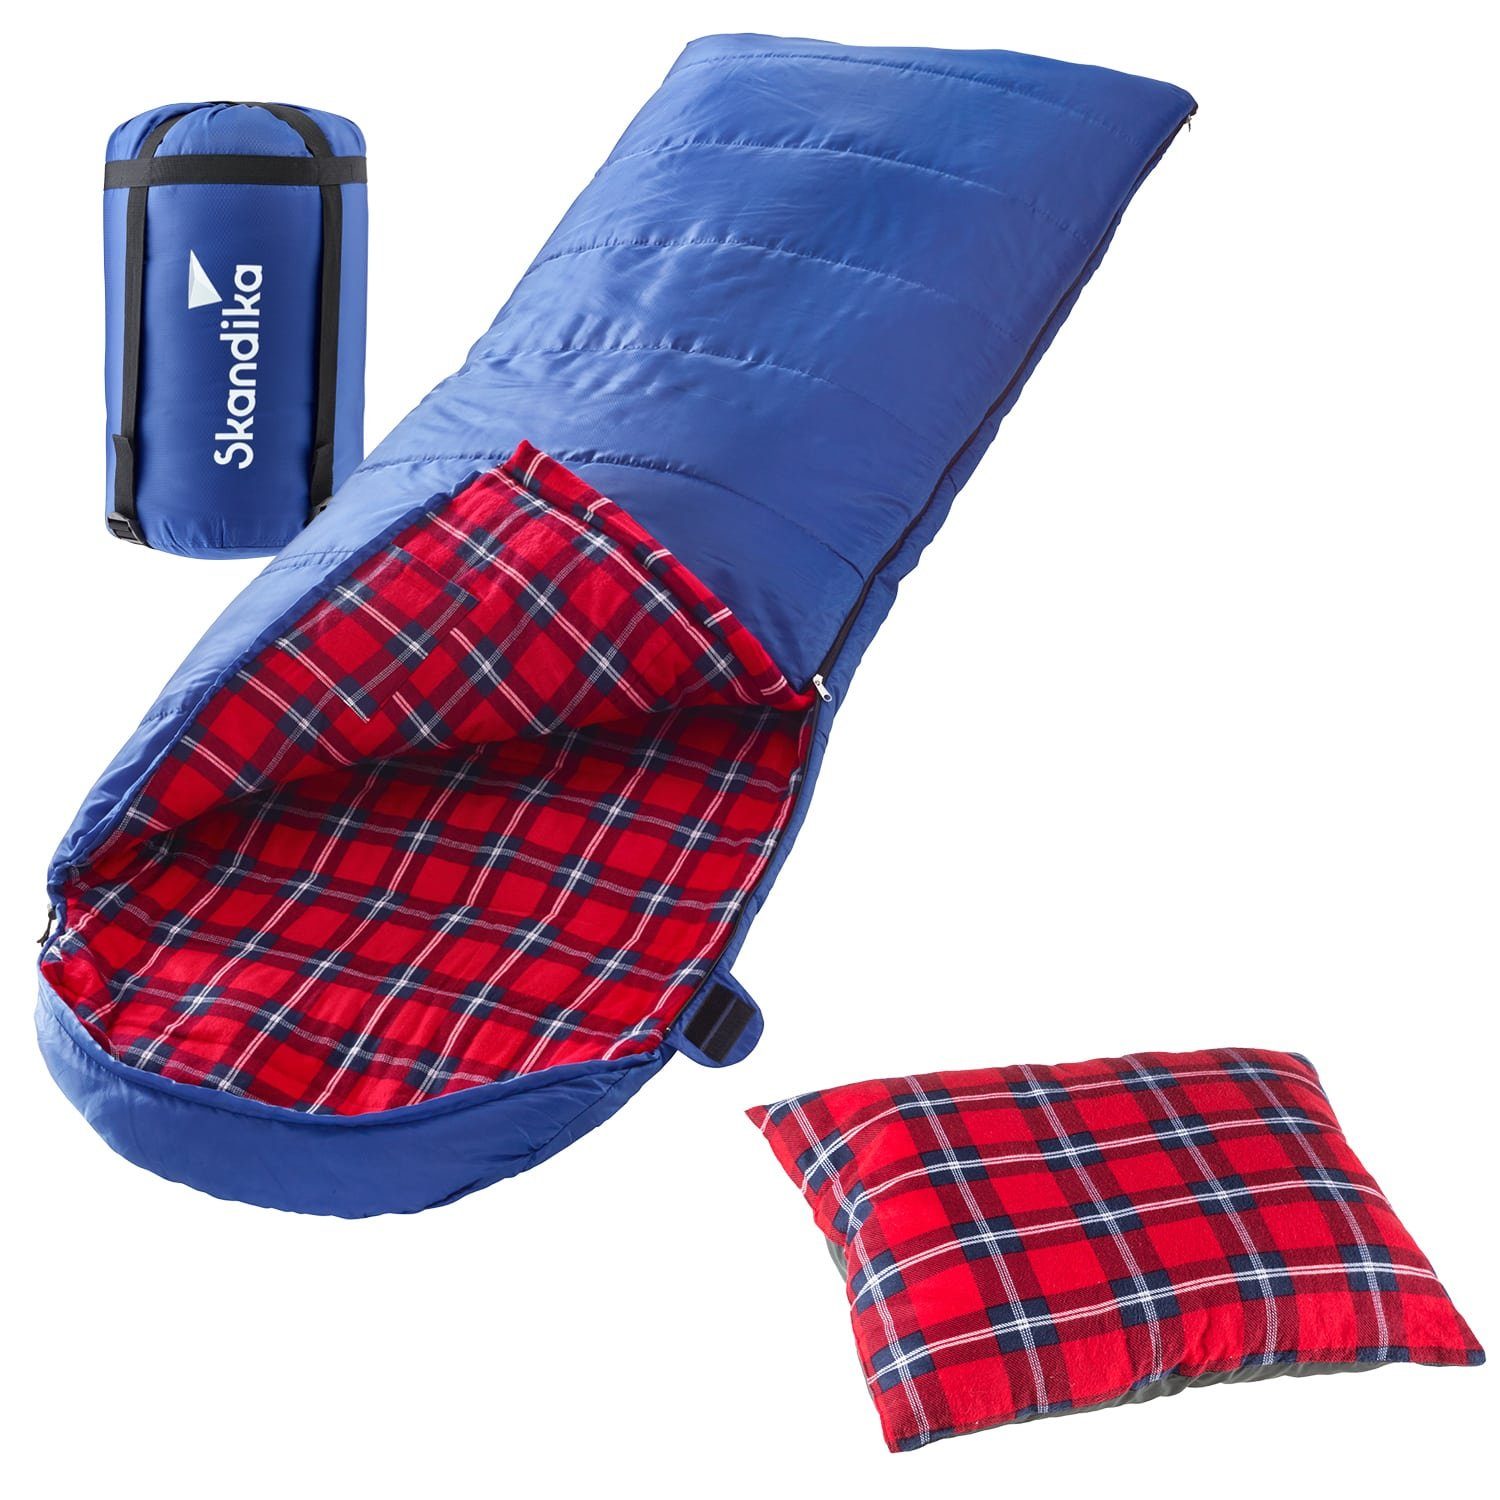 Skandika Deckenschlafsack Dundee (blau, RVL) + Sleepyhead (rot)  (wasserabweisend, atmungsaktiv, Extremtemperaturbereich -20°C, inkl.  Kissen, Outdoor, Camping), Flanell, Baumwolle, Luxus-Qualität